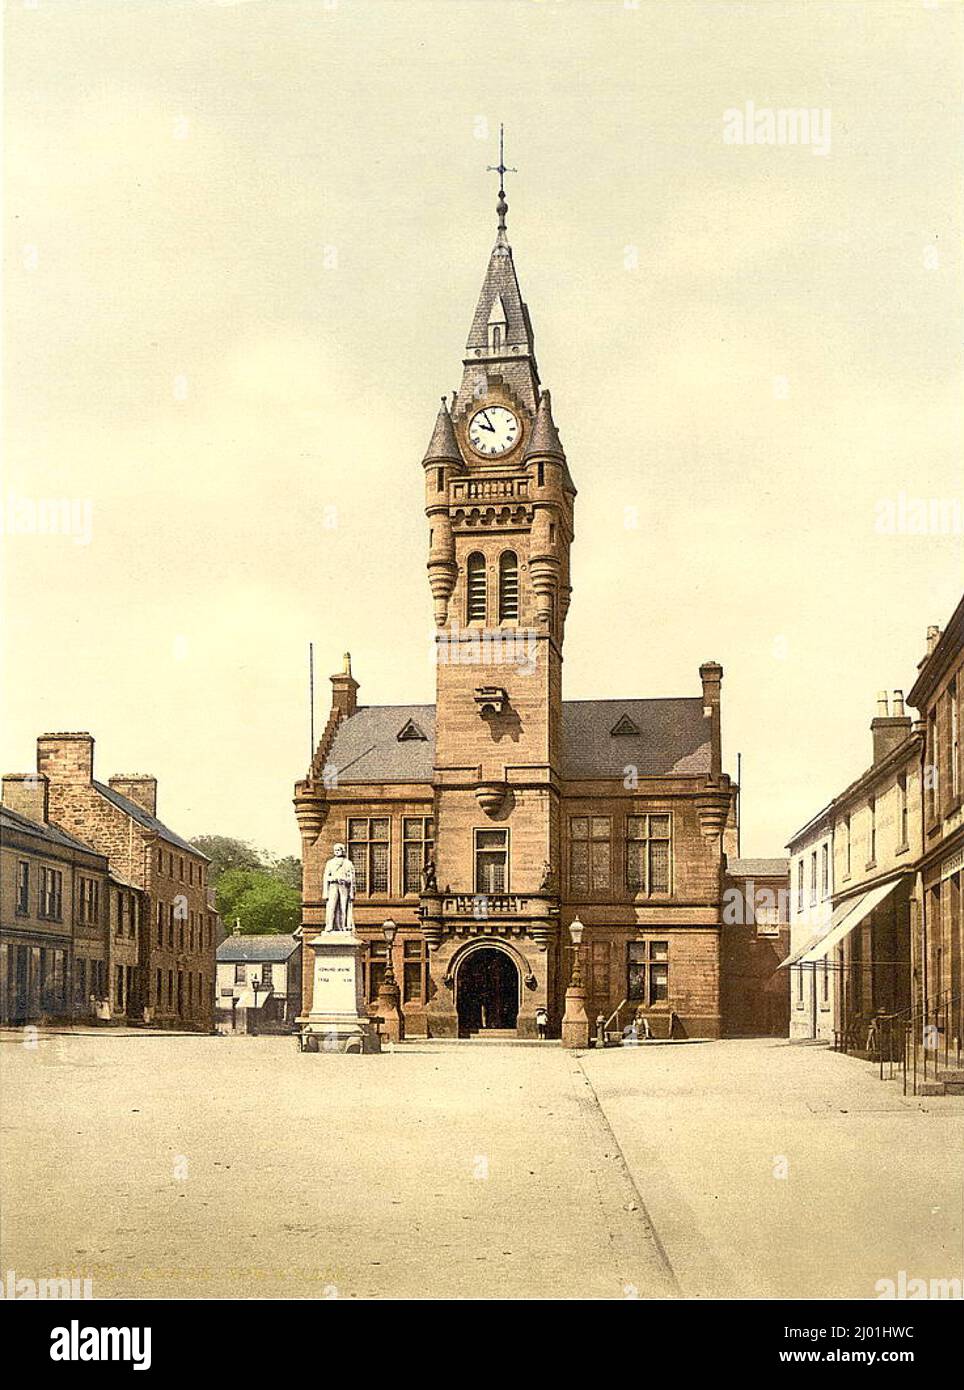 Town Hall, Annan, Scotland Stock Vector